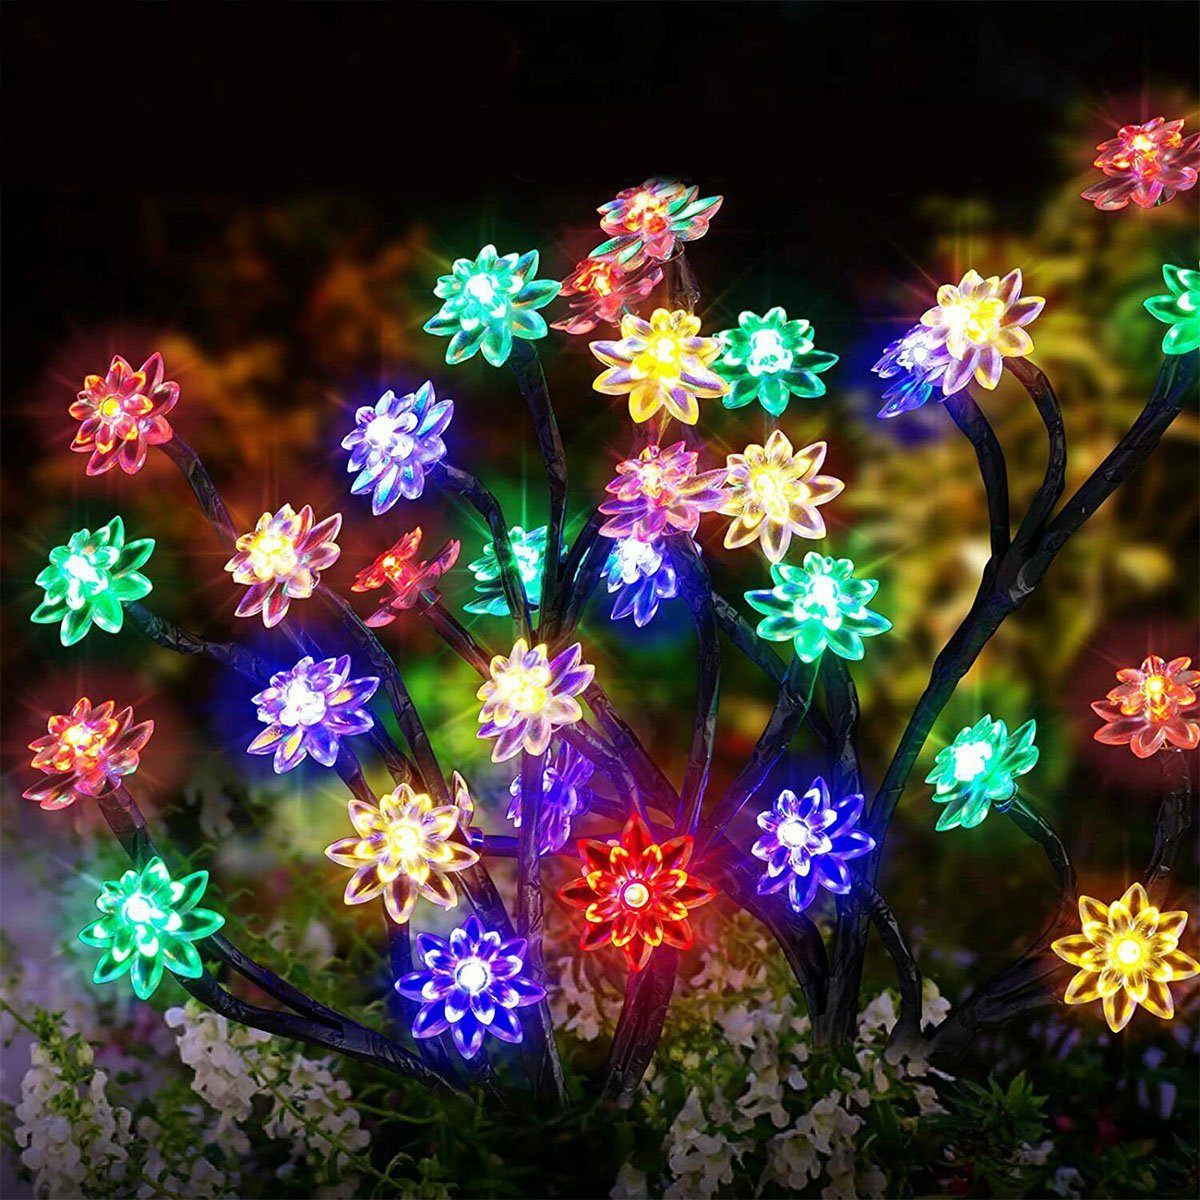 Gartenstecker bunt LETGOSPT Solarleuchte Blüten Traum fest beleuchtet, Lichter LED Lotusblumen integriert, 2x LED LED Solar